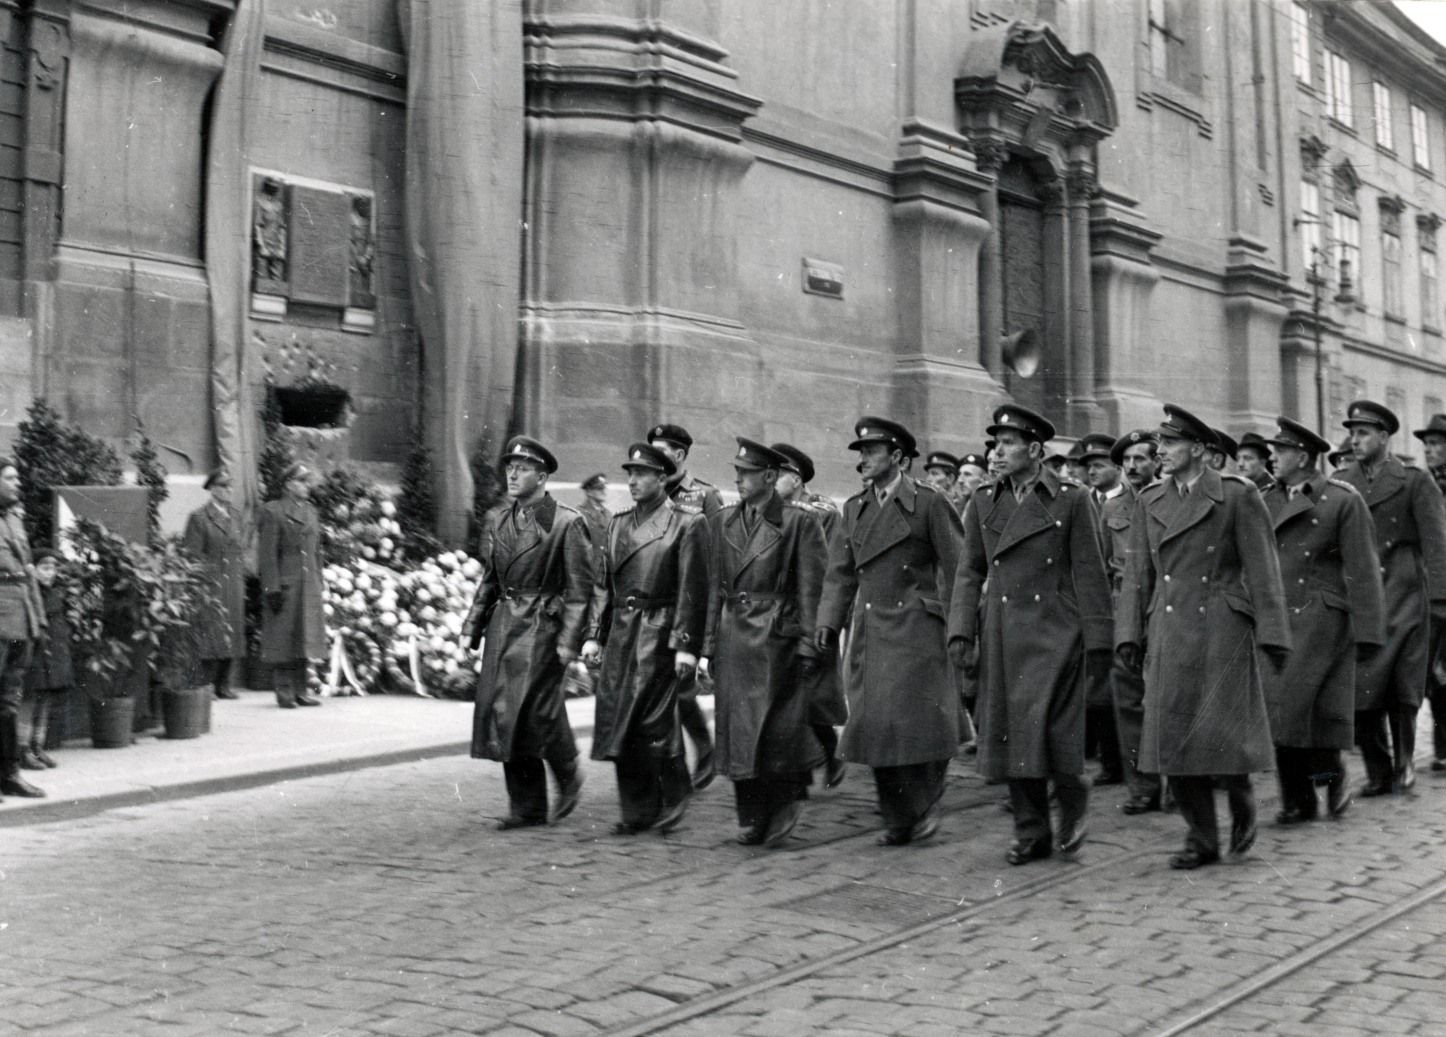 Parašutisté v Česku za války